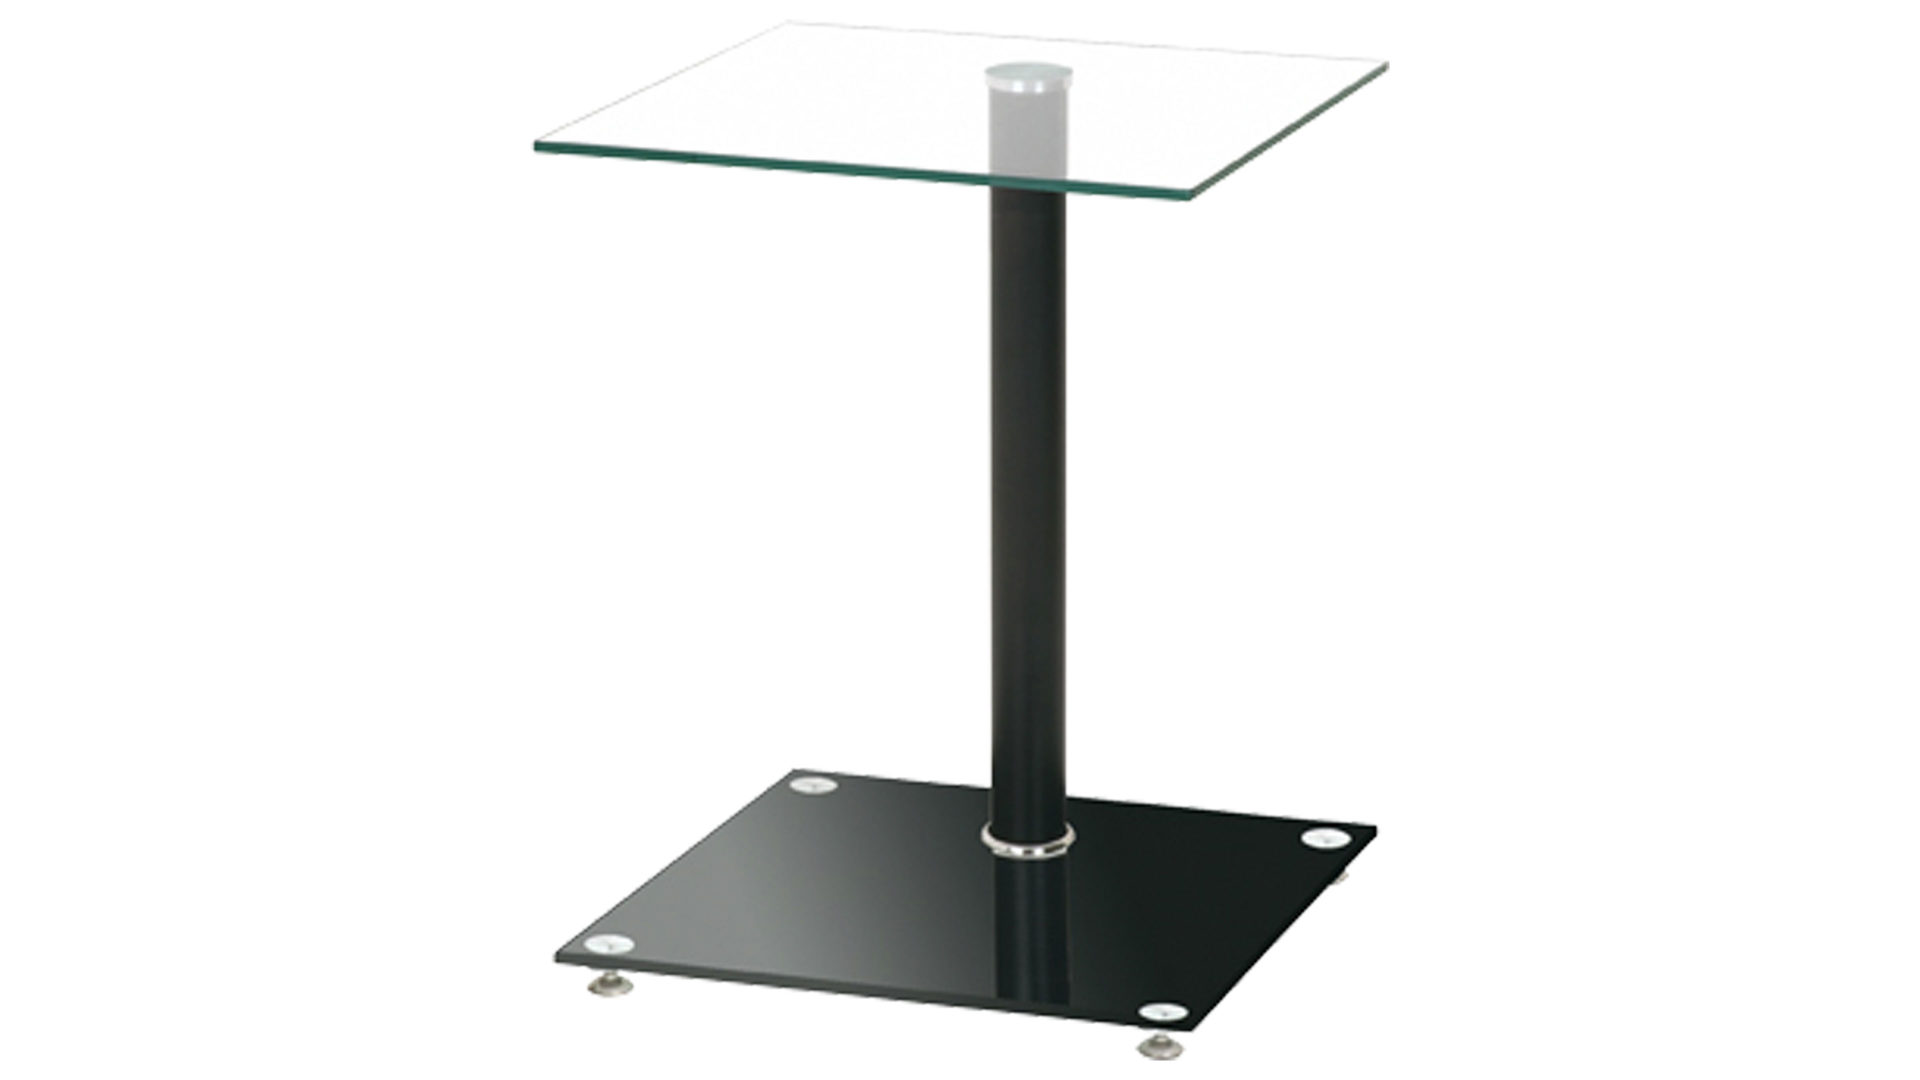 Beistelltisch Haku aus Glas in Schwarz Beistelltisch als praktisches Kleinmöbel Glasplatten & Edelstahl – ca. 40 x 40 cm